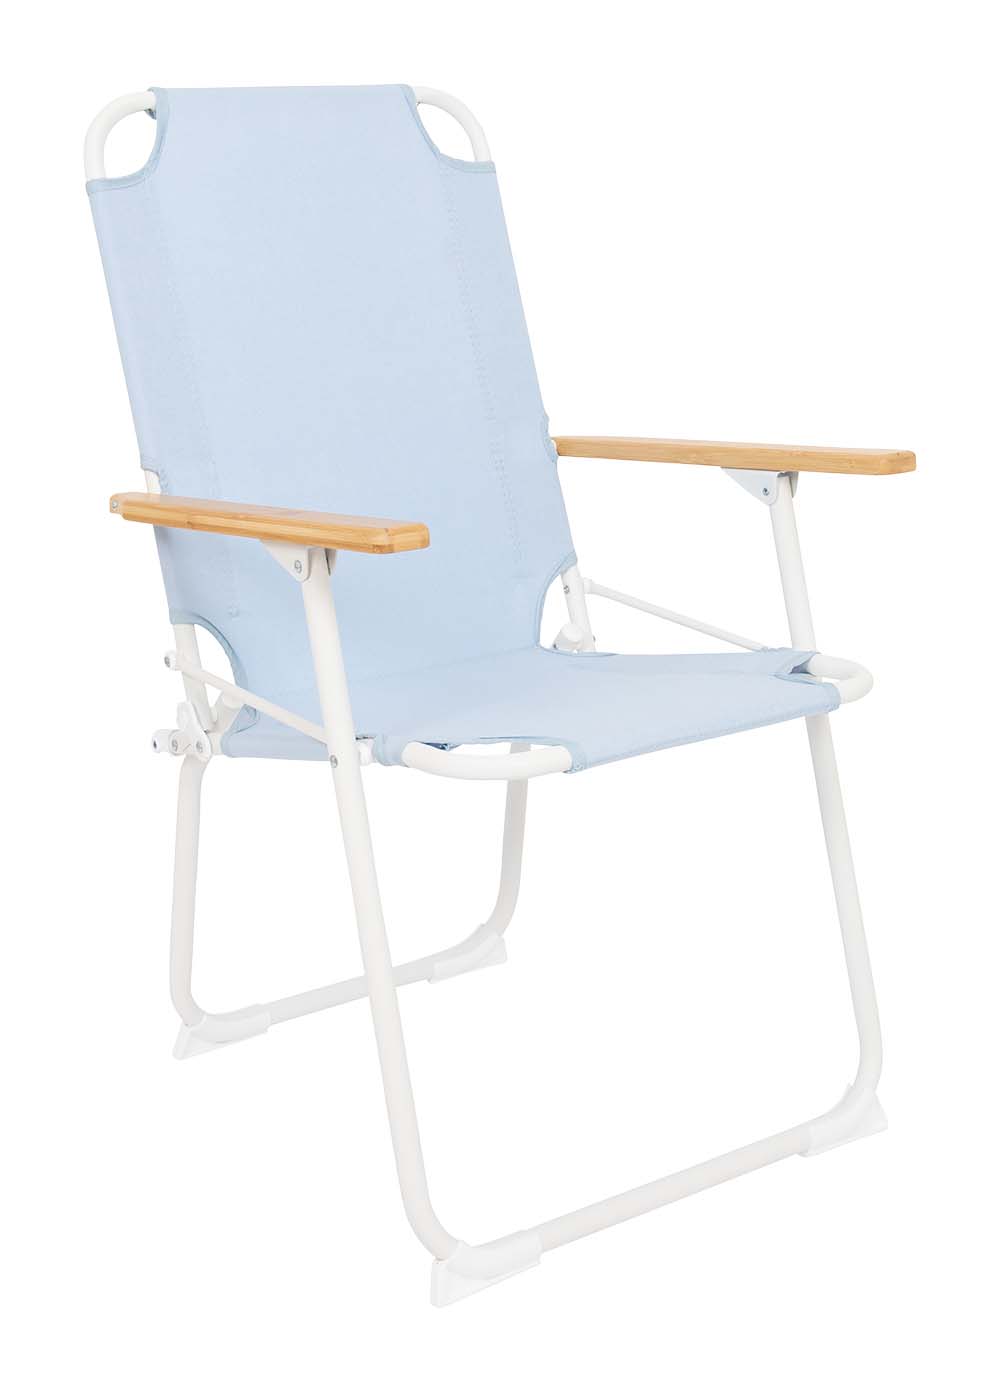 1211870 "De klassieker met een moderne en kleurrijke uitstraling uit de Pastel collectie. Een stoel waarbij stijl, comfort en functionaliteit worden gecombineerd. Voorzien van een Oxford Polyester bekleding voor ultiem comfort, een lichtgewicht aluminium frame en bamboe armleggers. Een ideale stoel voor in de tuin of op de camping, maar ook op het balkon en in de woonkamer. Daarnaast is deze stoel voorzien van extra stabilisatoren en een 'safety-lock' tegen ongewenst inklappen. Compact mee te nemen."